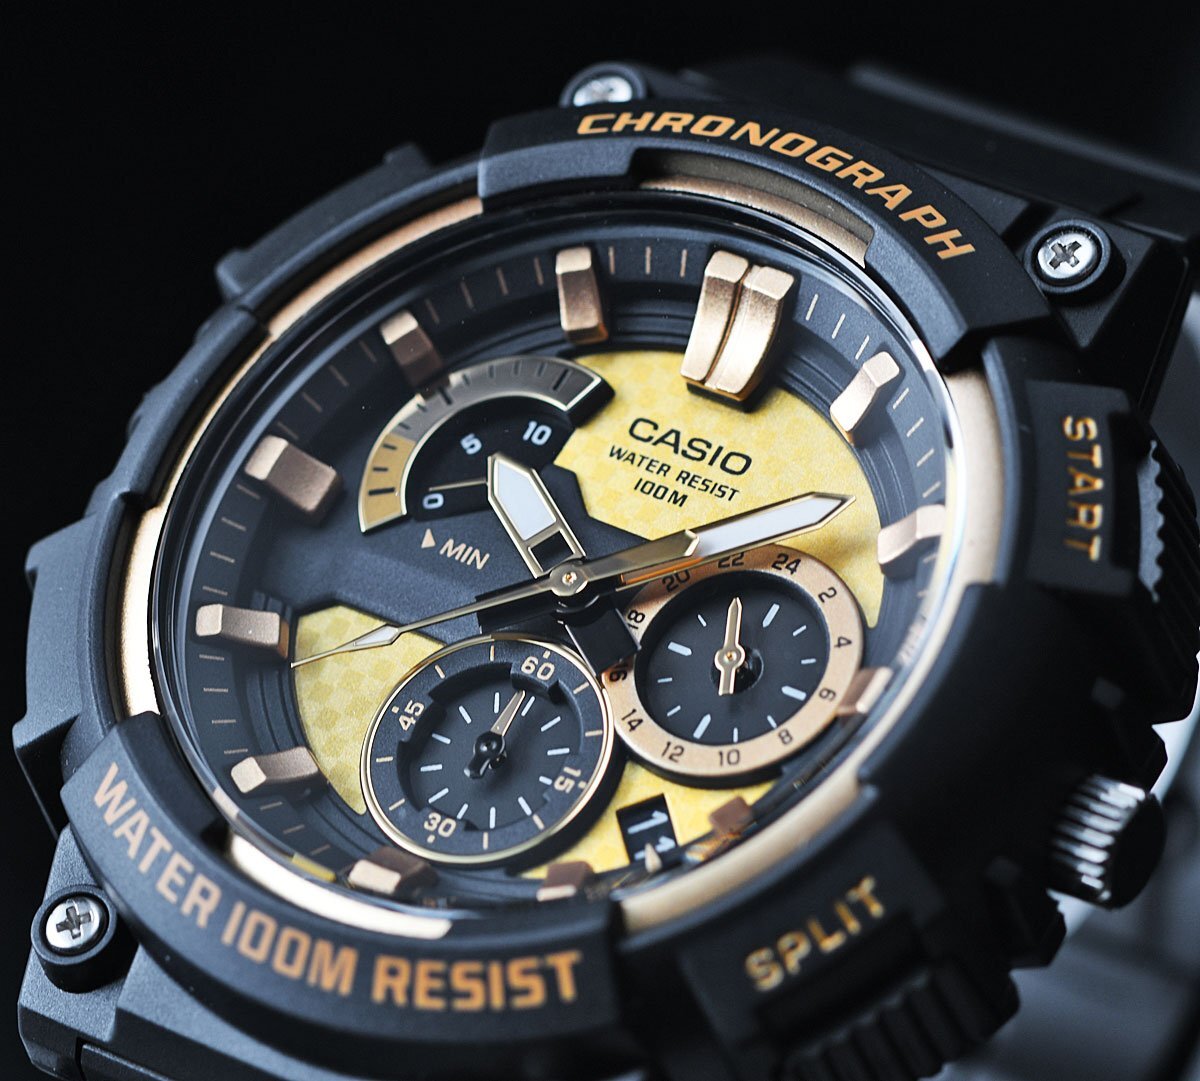  новый товар 1 иен реимпорт Casio самый новый продукт легкий хронограф 100m водонепроницаемый Gold Retrograde очень редкий в Японии не продается не использовался мужские наручные часы редкий иностранная модель 